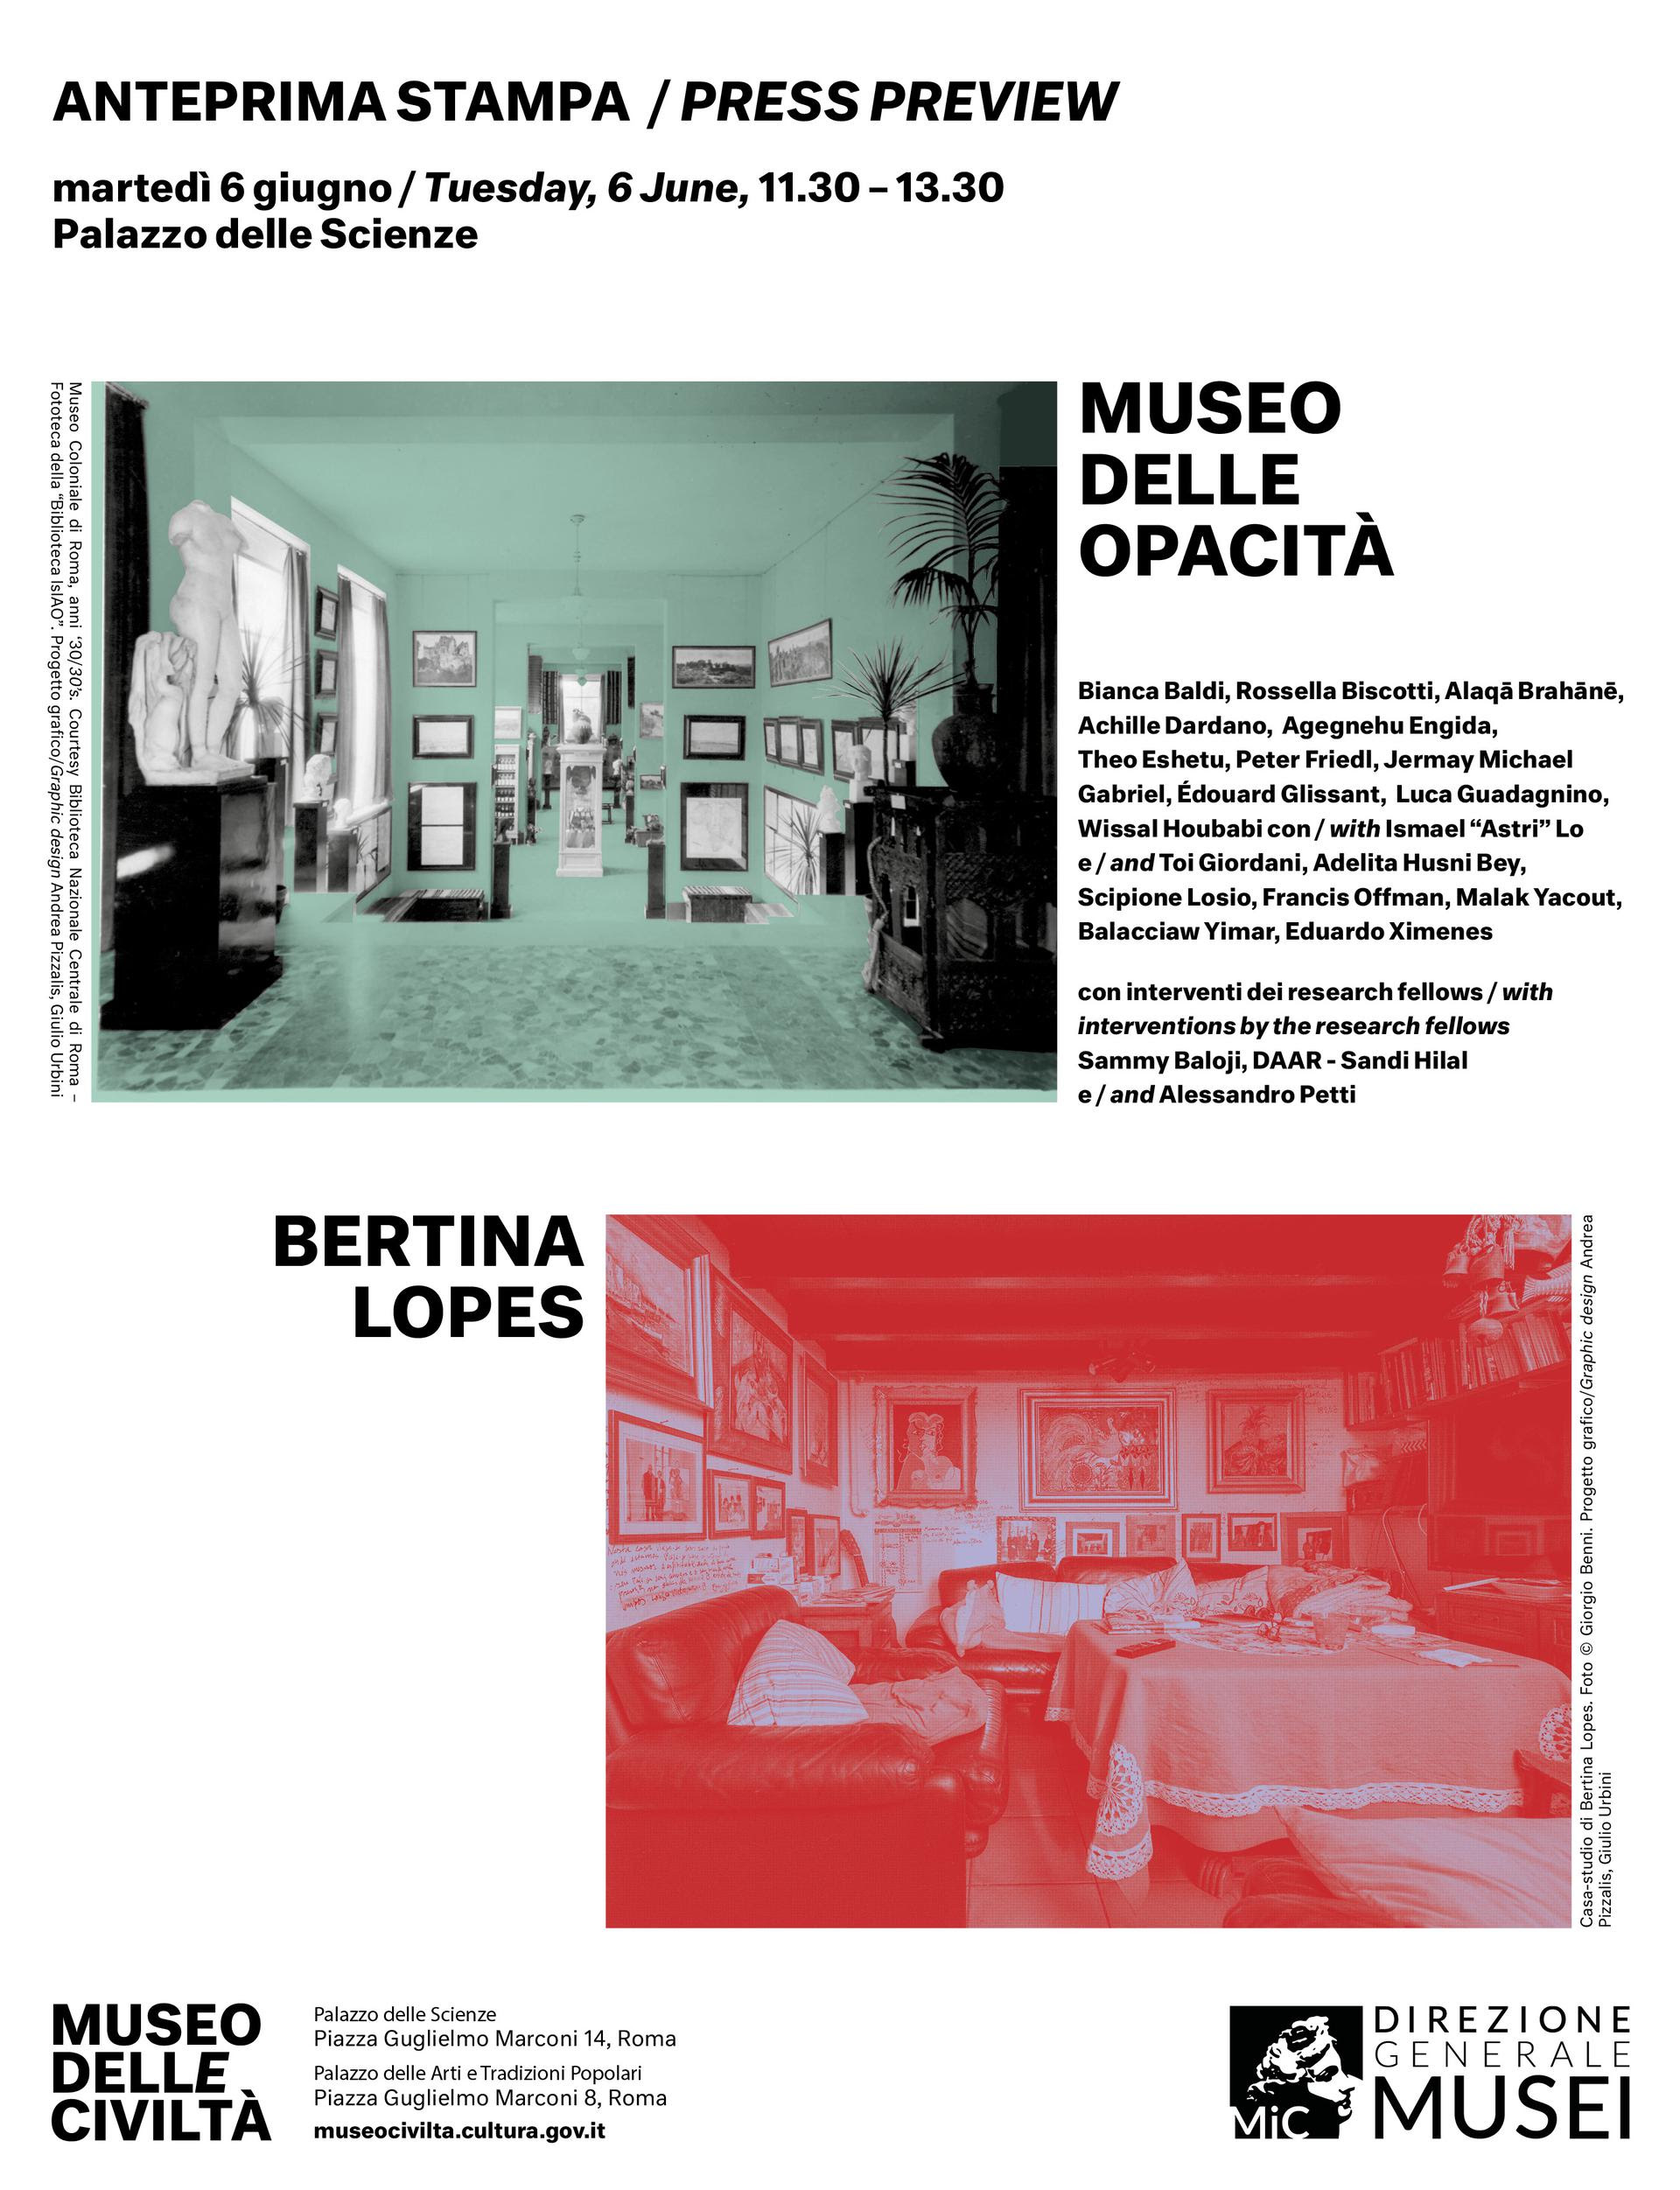 Museo delle Opacità / Bertina Lopes